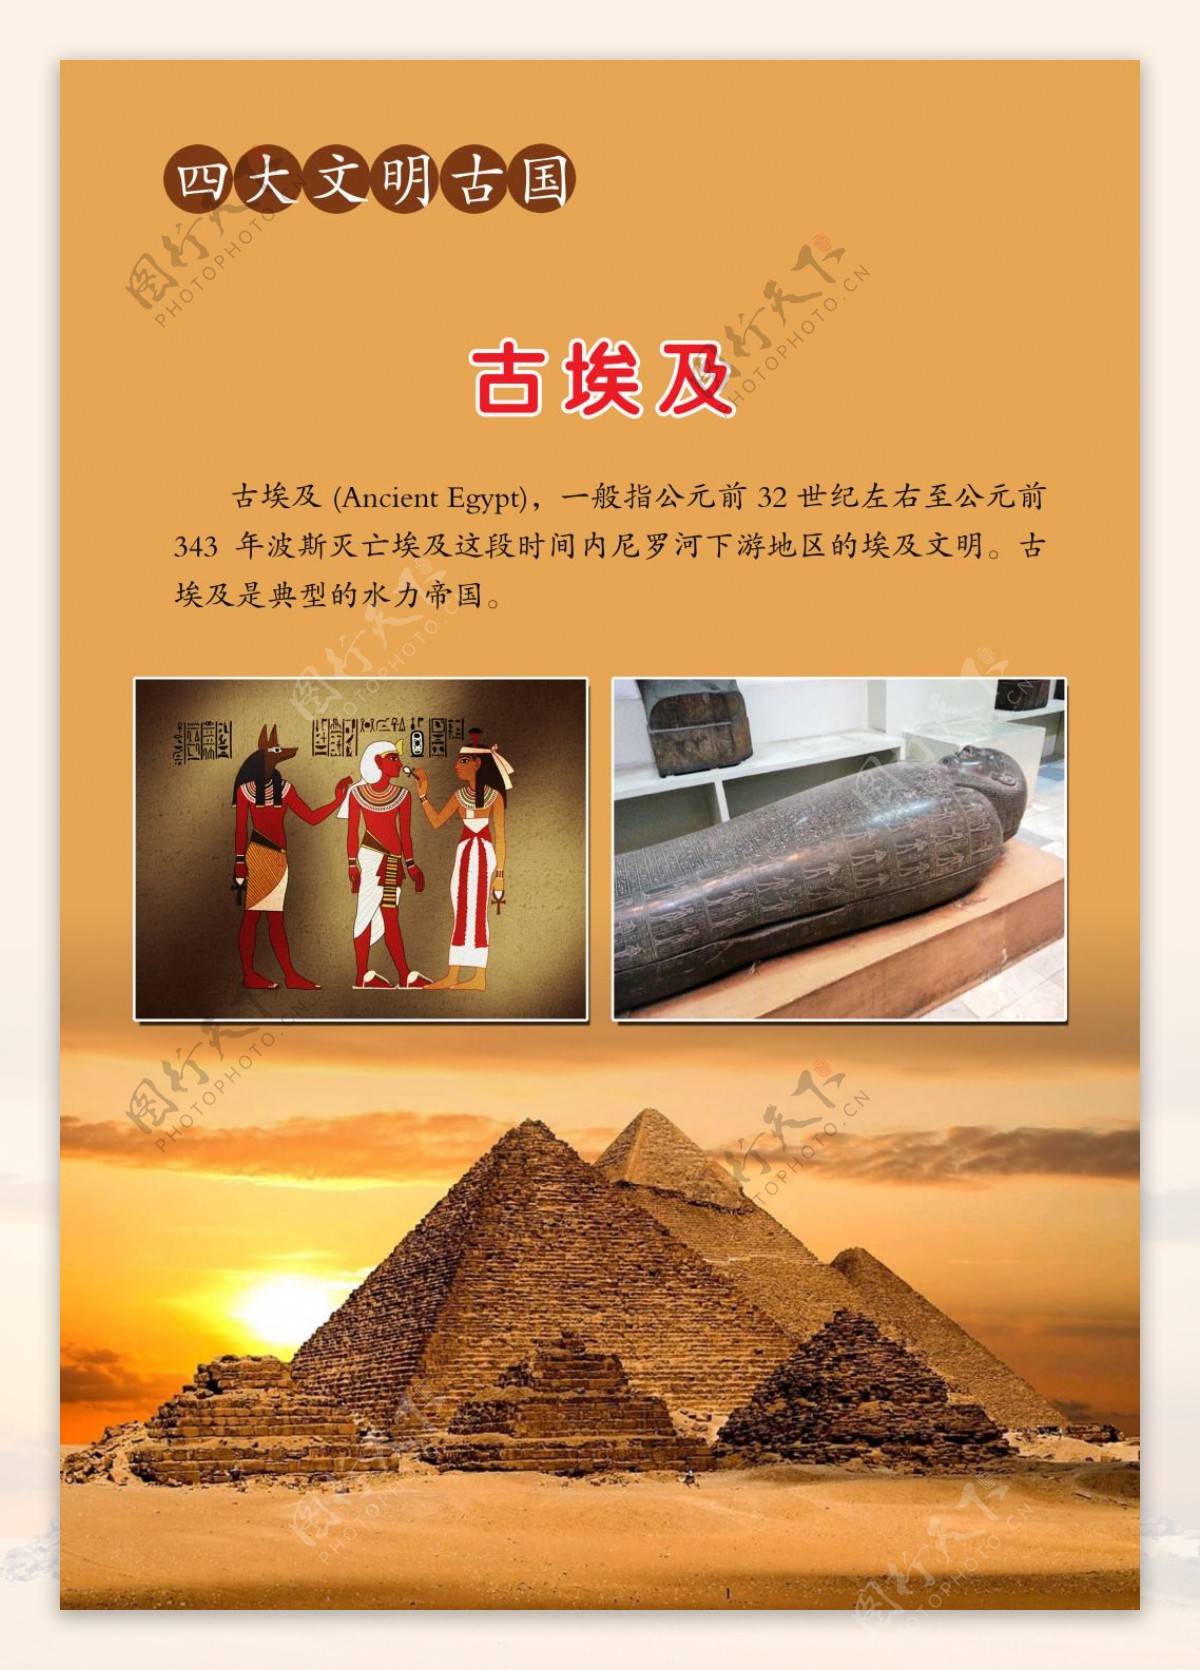 世界四大文明古国之古埃及